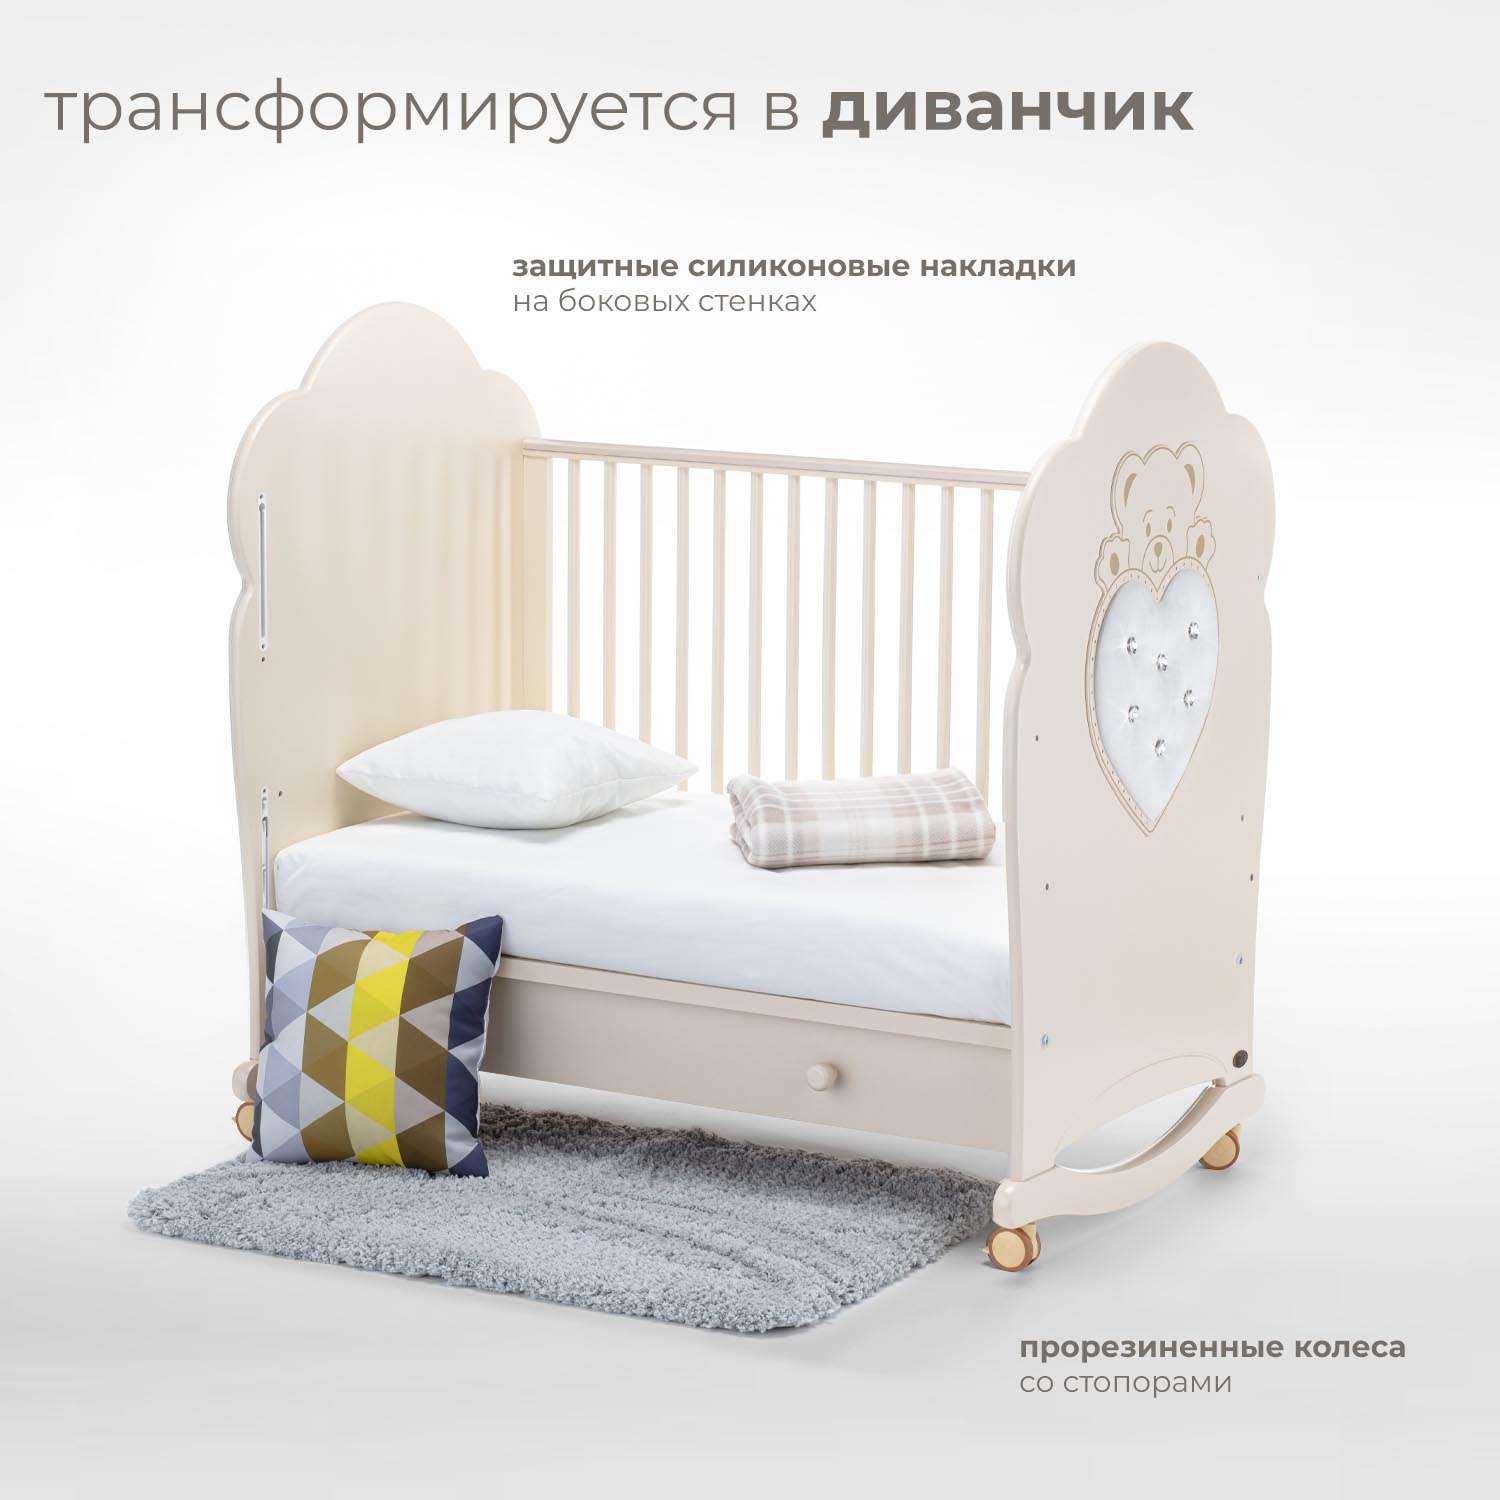 Детская кроватка Nuovita Fortuna Dondolo прямоугольная, без маятника (слоновая кость) - фото 5